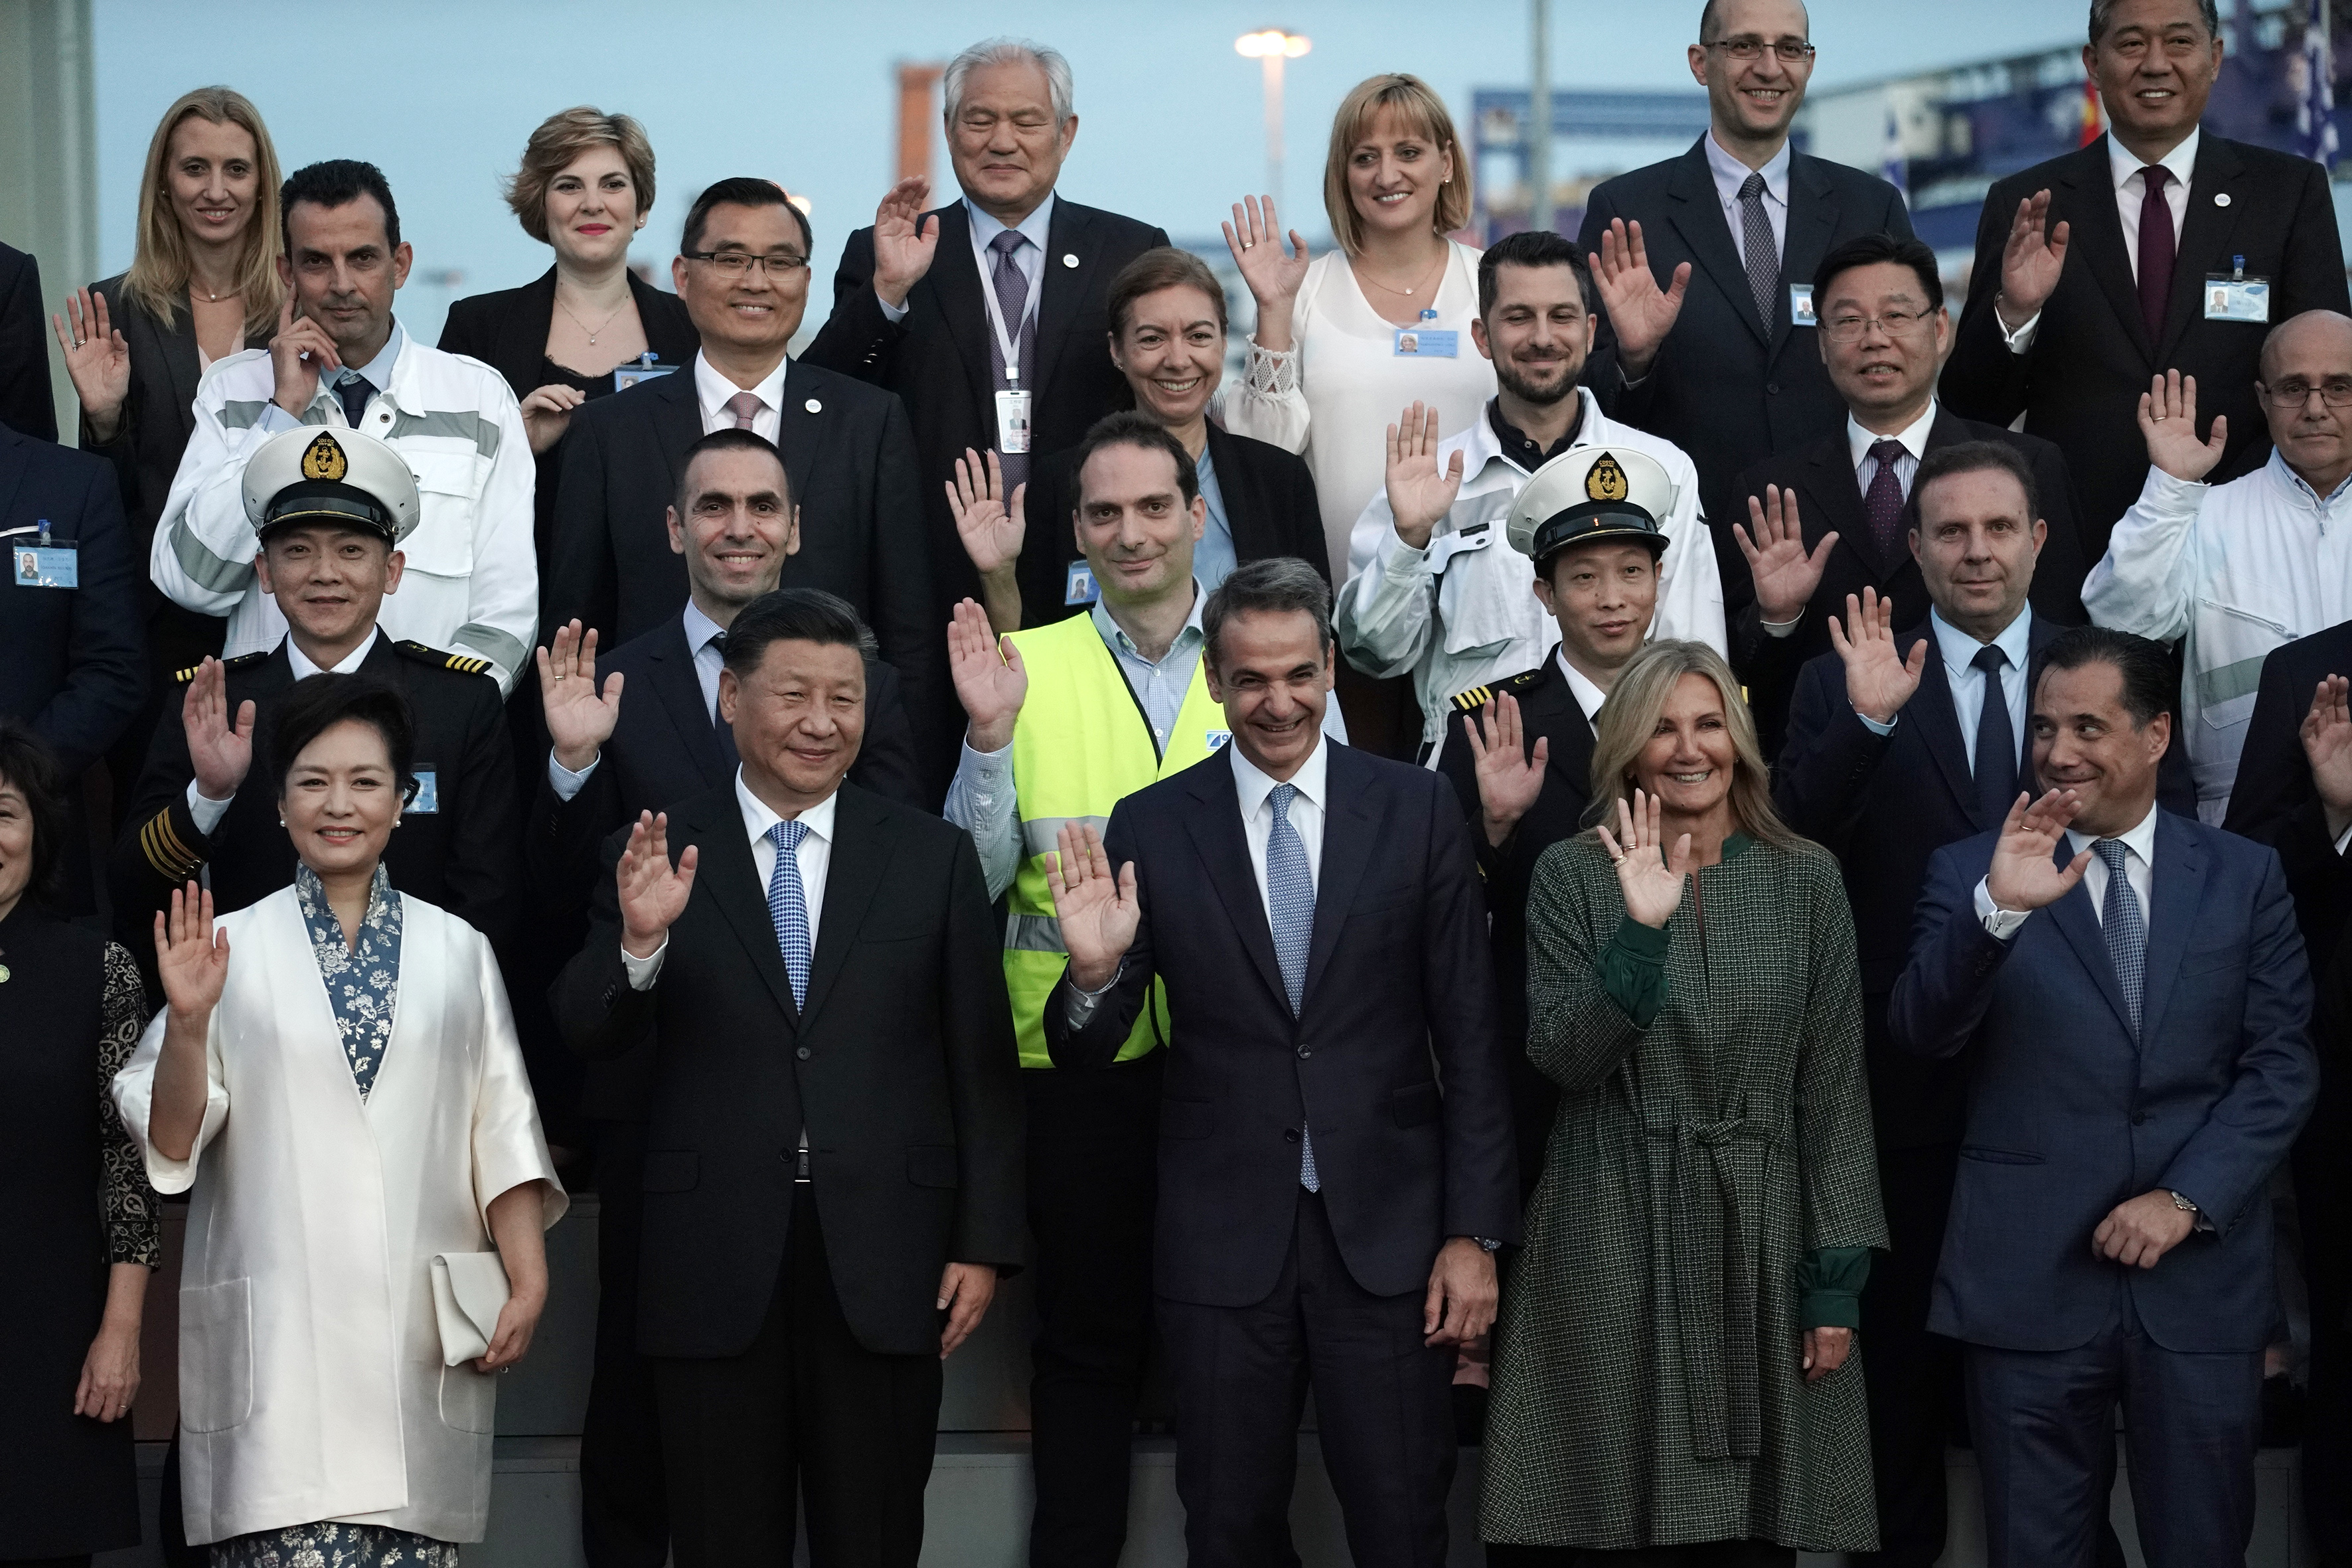 Η Cosco από ψηλά, η εντυπωσιακή Μαρέβα, η λιμουζίνα του Κινέζου προέδρου και τα χαμόγελα